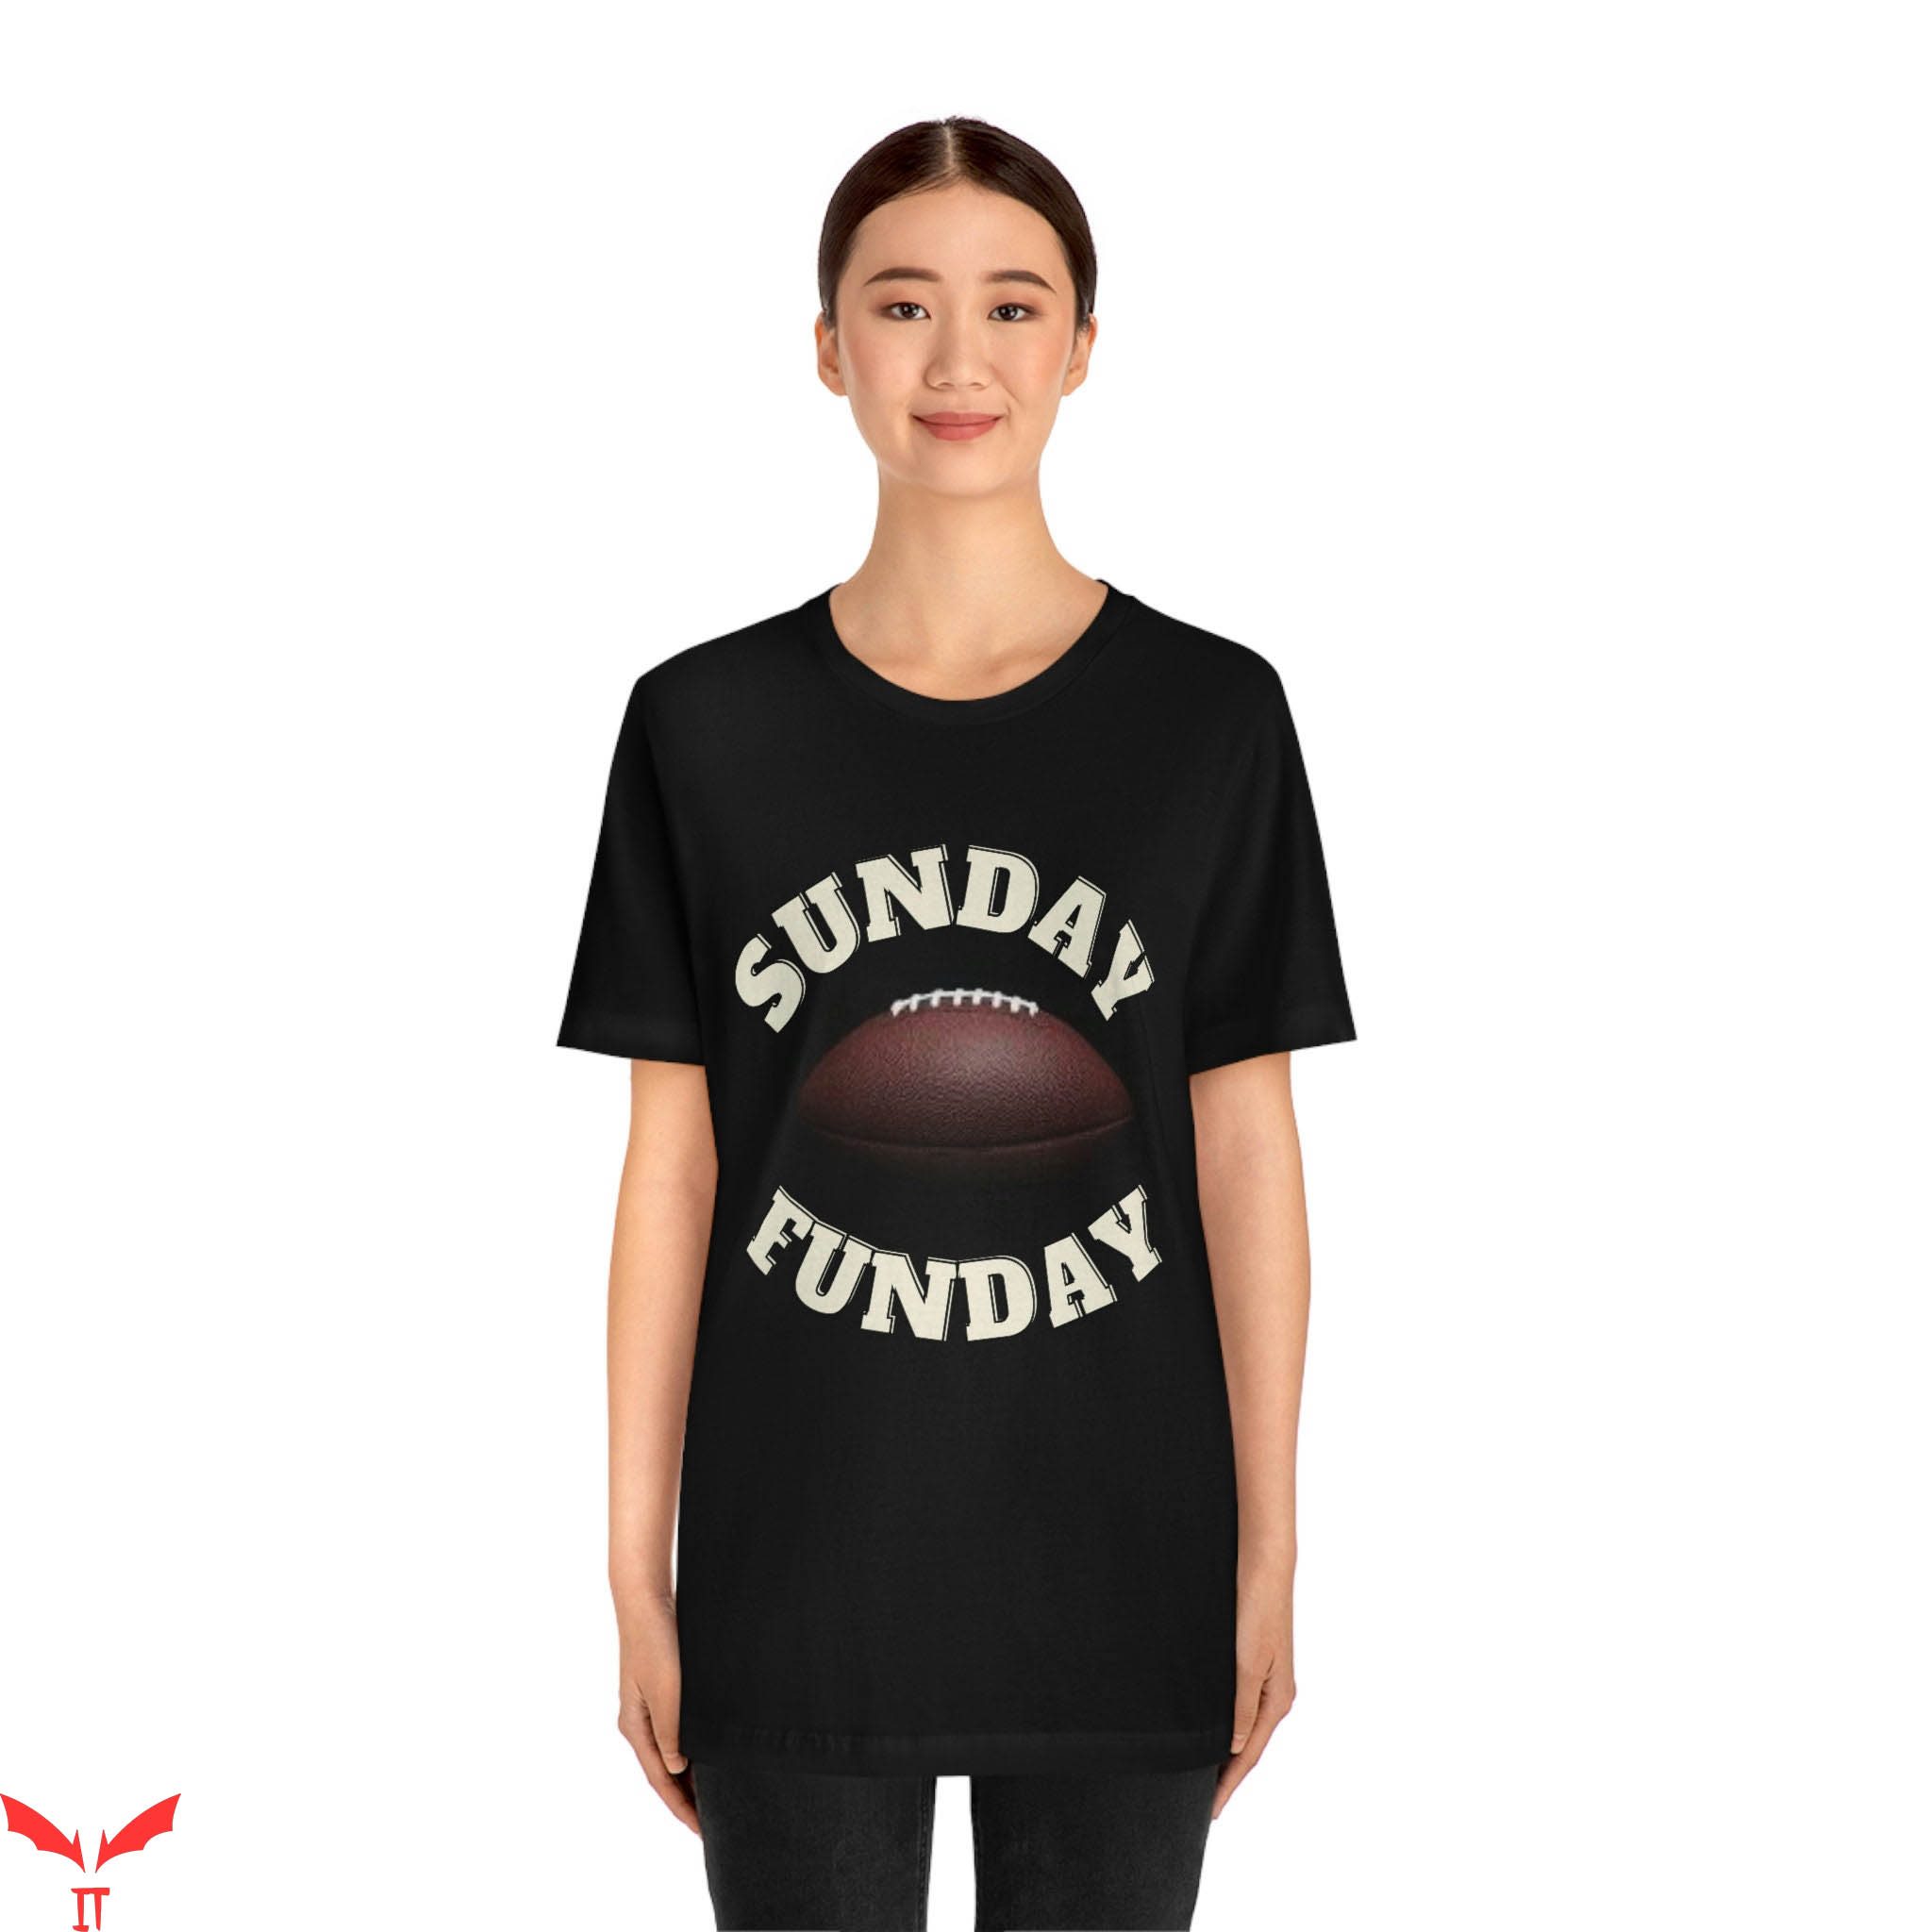 Sunday Funday T-Shirt Sunday Funday Football T-shirt